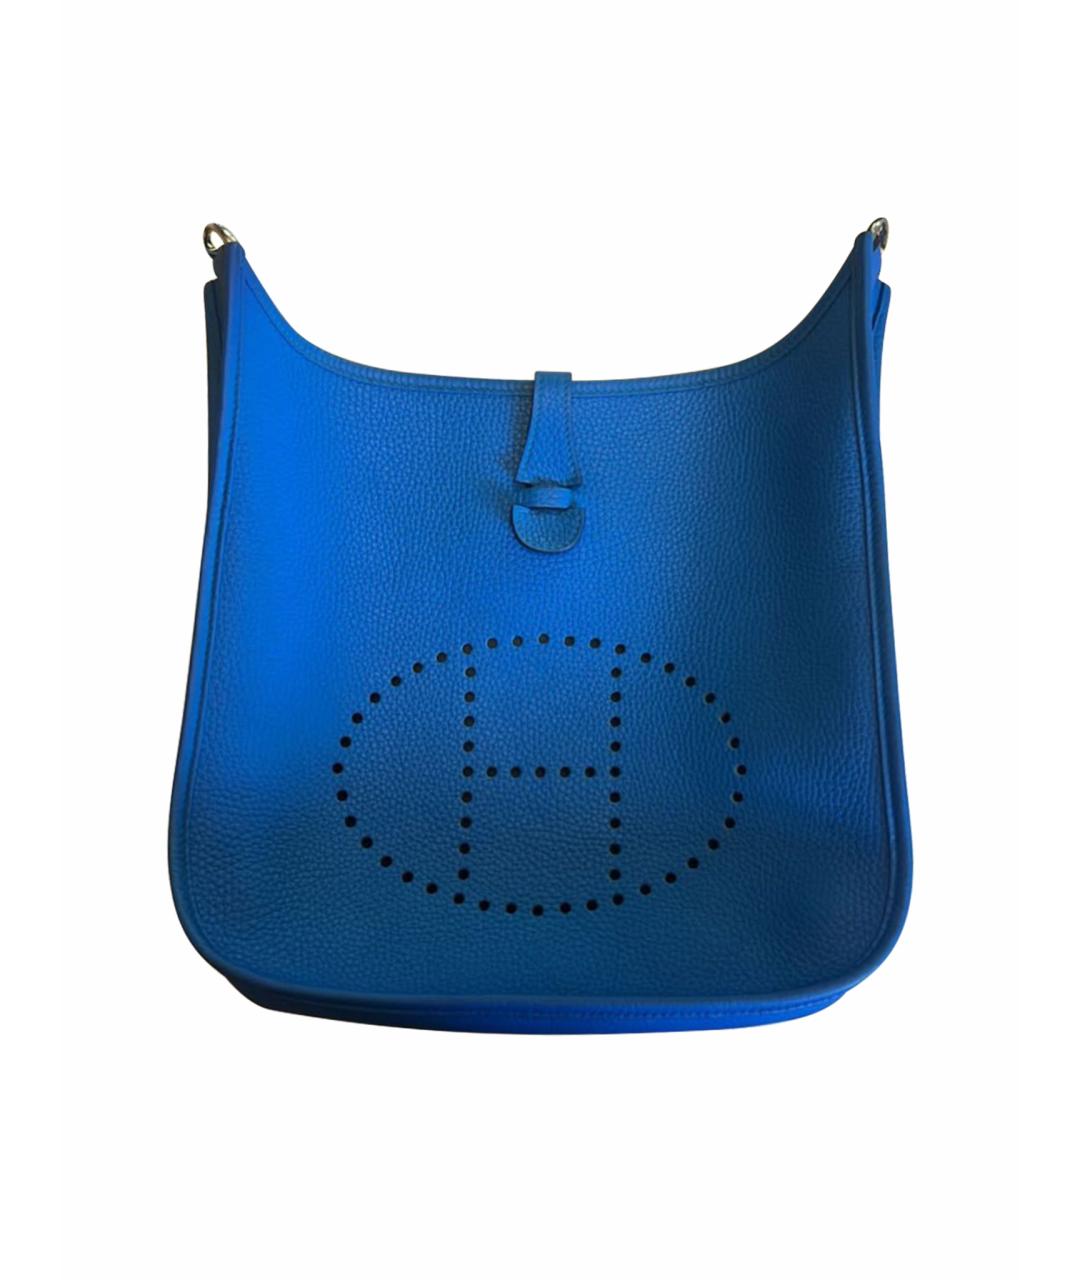 HERMES PRE-OWNED Синяя кожаная сумка через плечо, фото 1